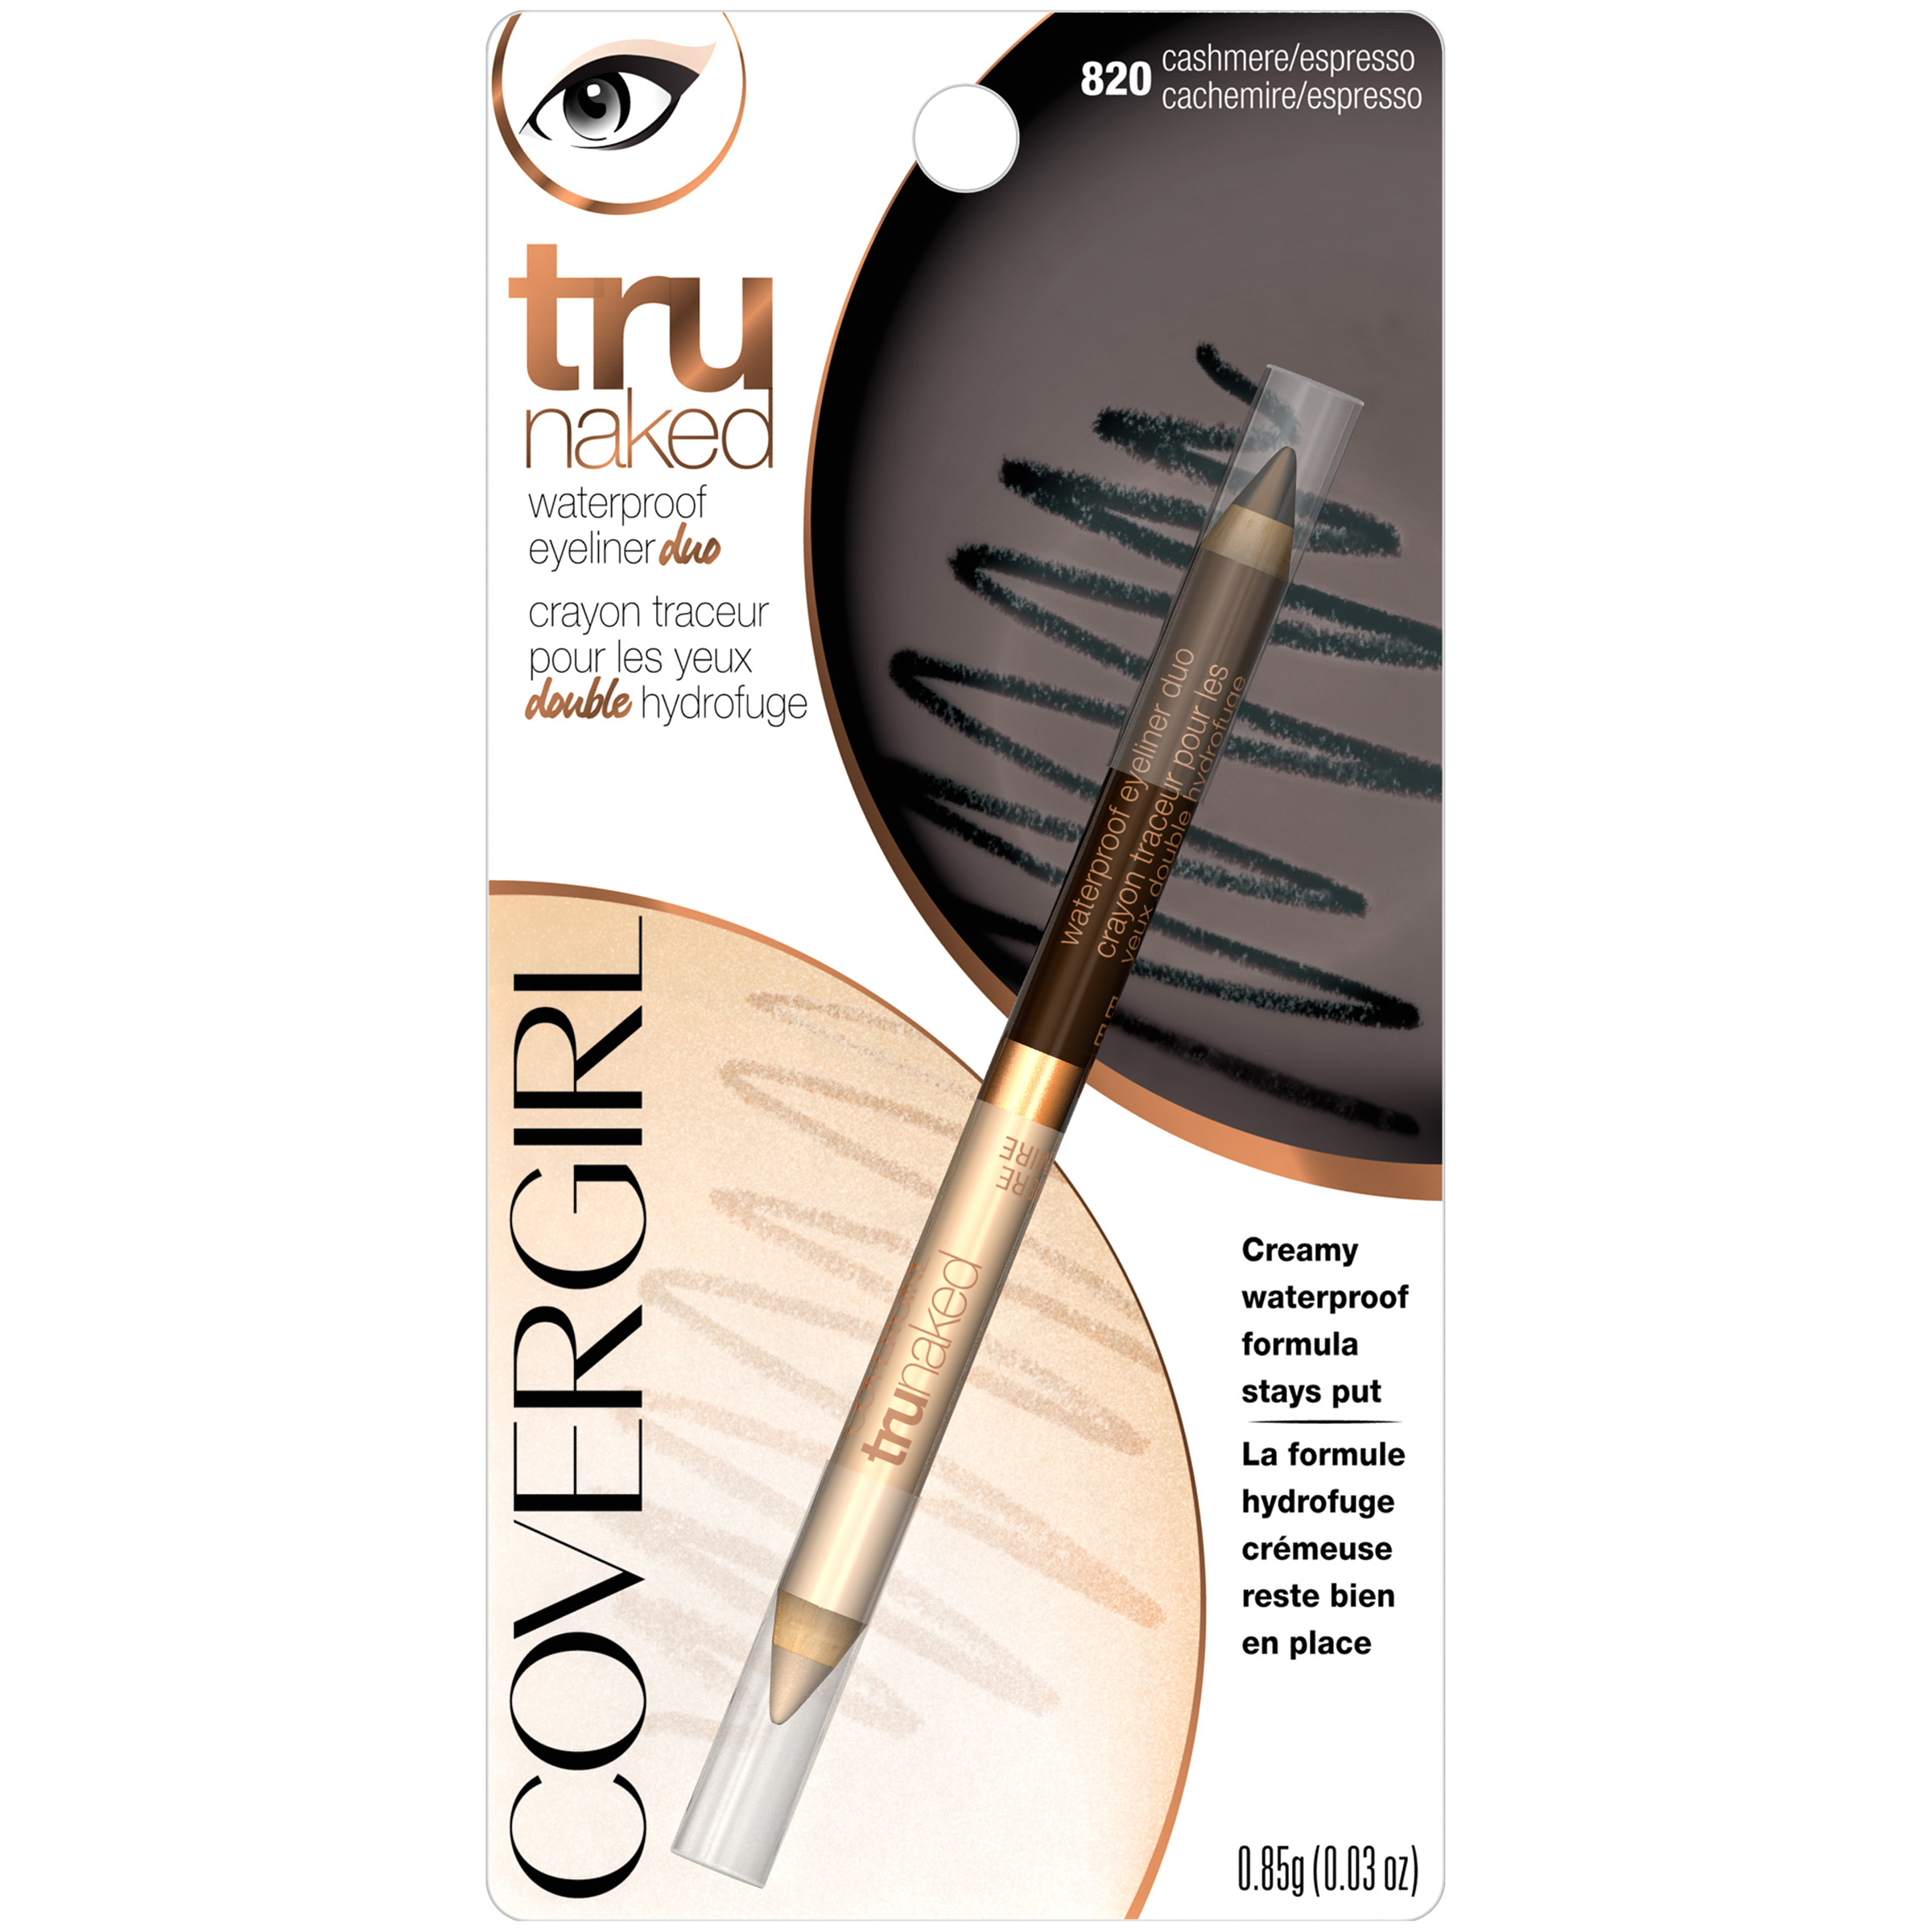 CoverGirl truNaked Waterproof Eyeliner Duo Pencil